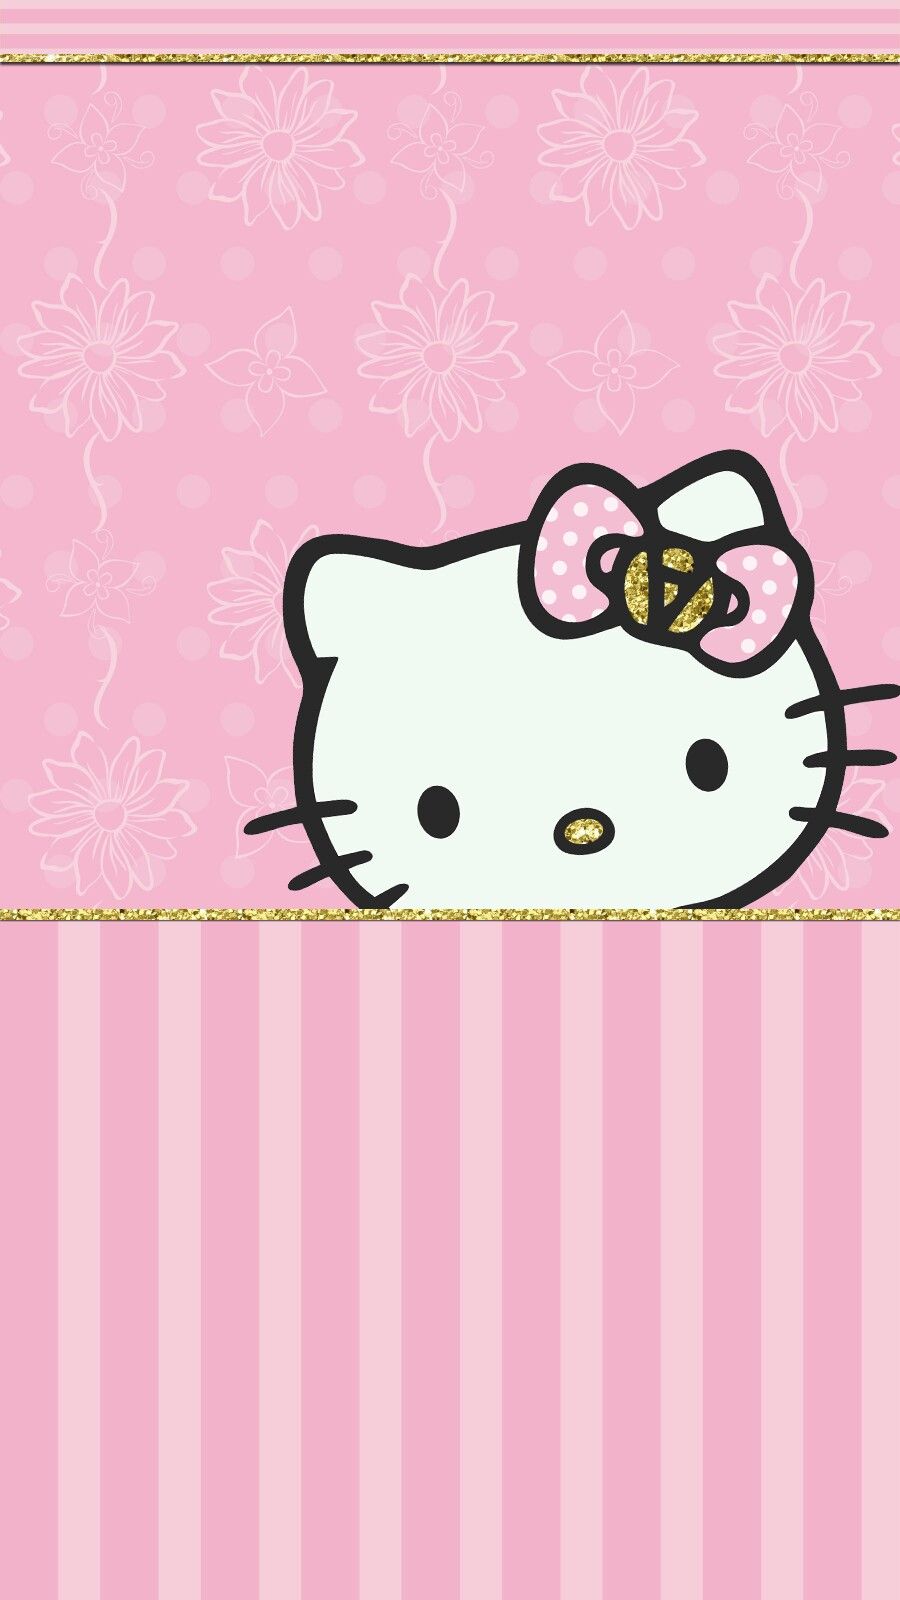 bonjour kitty fond d'écran de téléphone portable,rose,dessin animé,ligne,conception,illustration